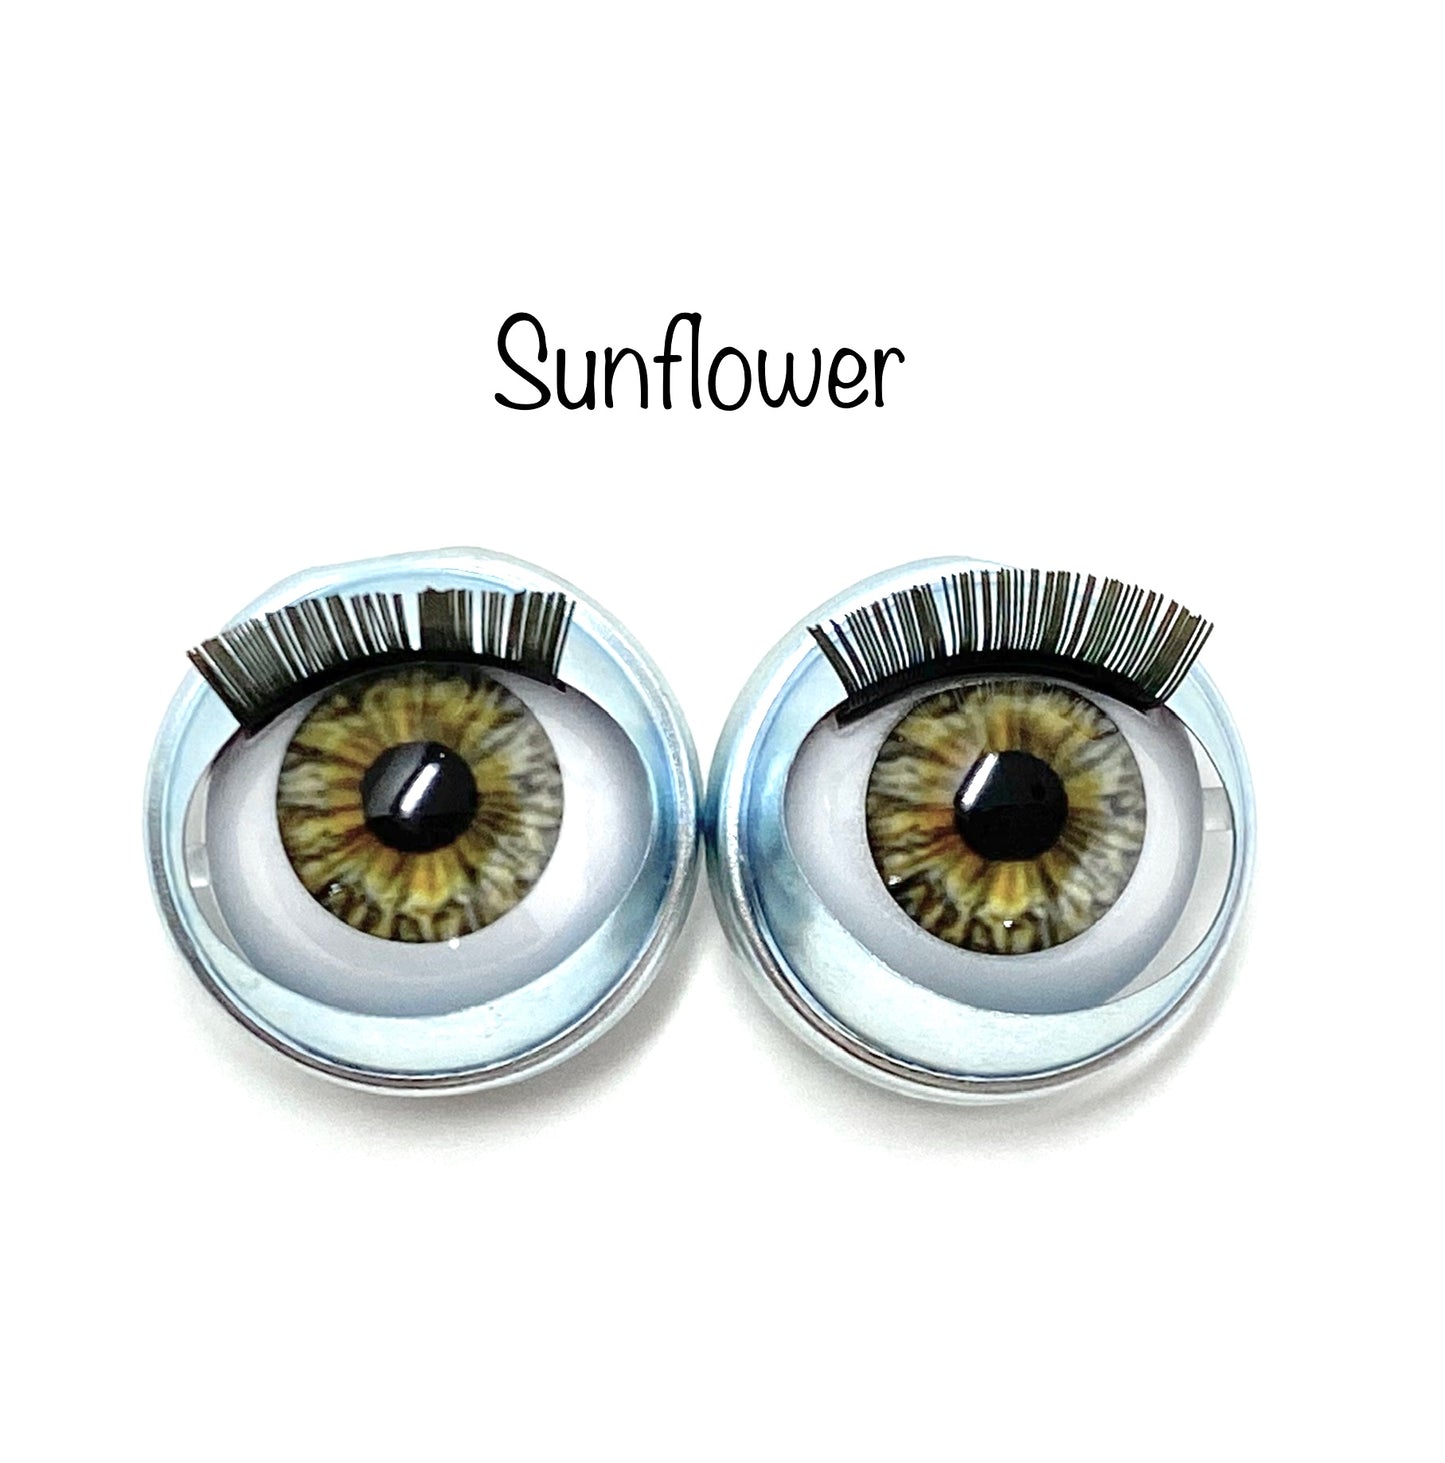 American Girl Custom Eyes “Sunflower”